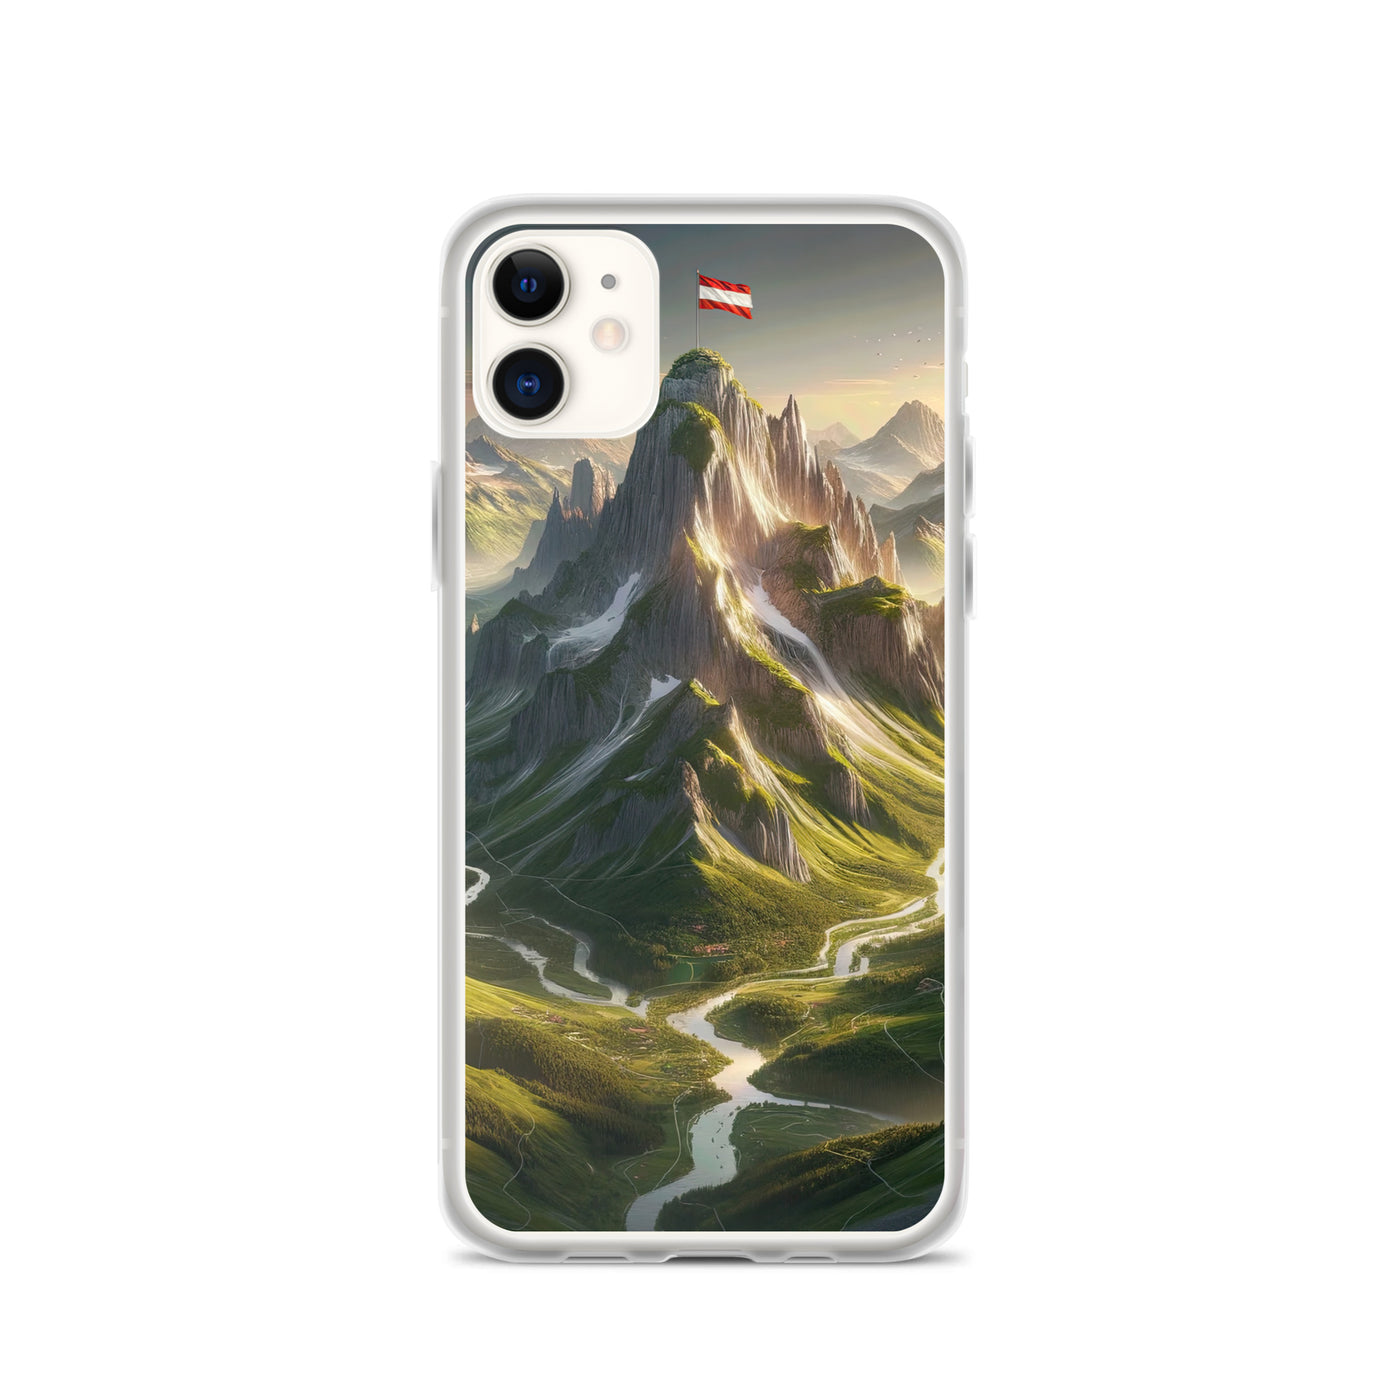 Fotorealistisches Bild der Alpen mit österreichischer Flagge, scharfen Gipfeln und grünen Tälern - iPhone Schutzhülle (durchsichtig) berge xxx yyy zzz iPhone 11